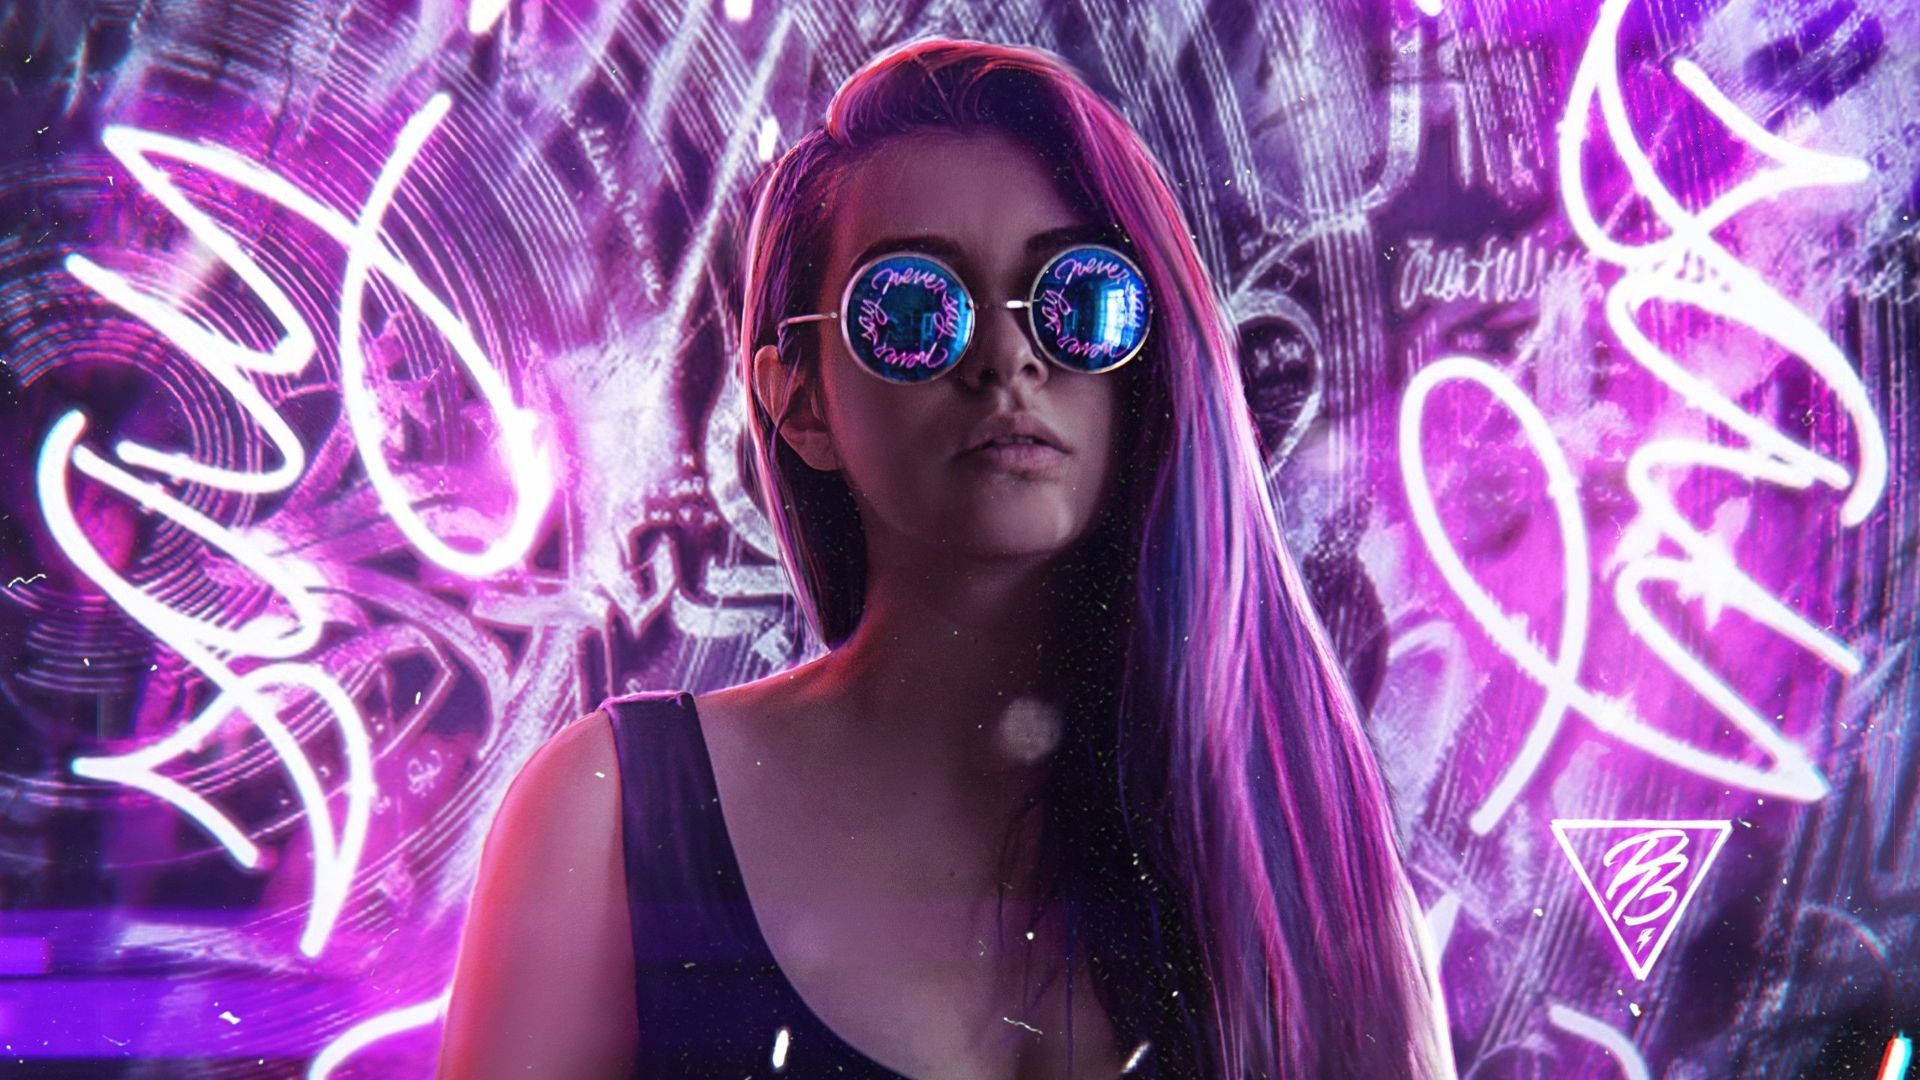 Neon Purple Cute Woman Background